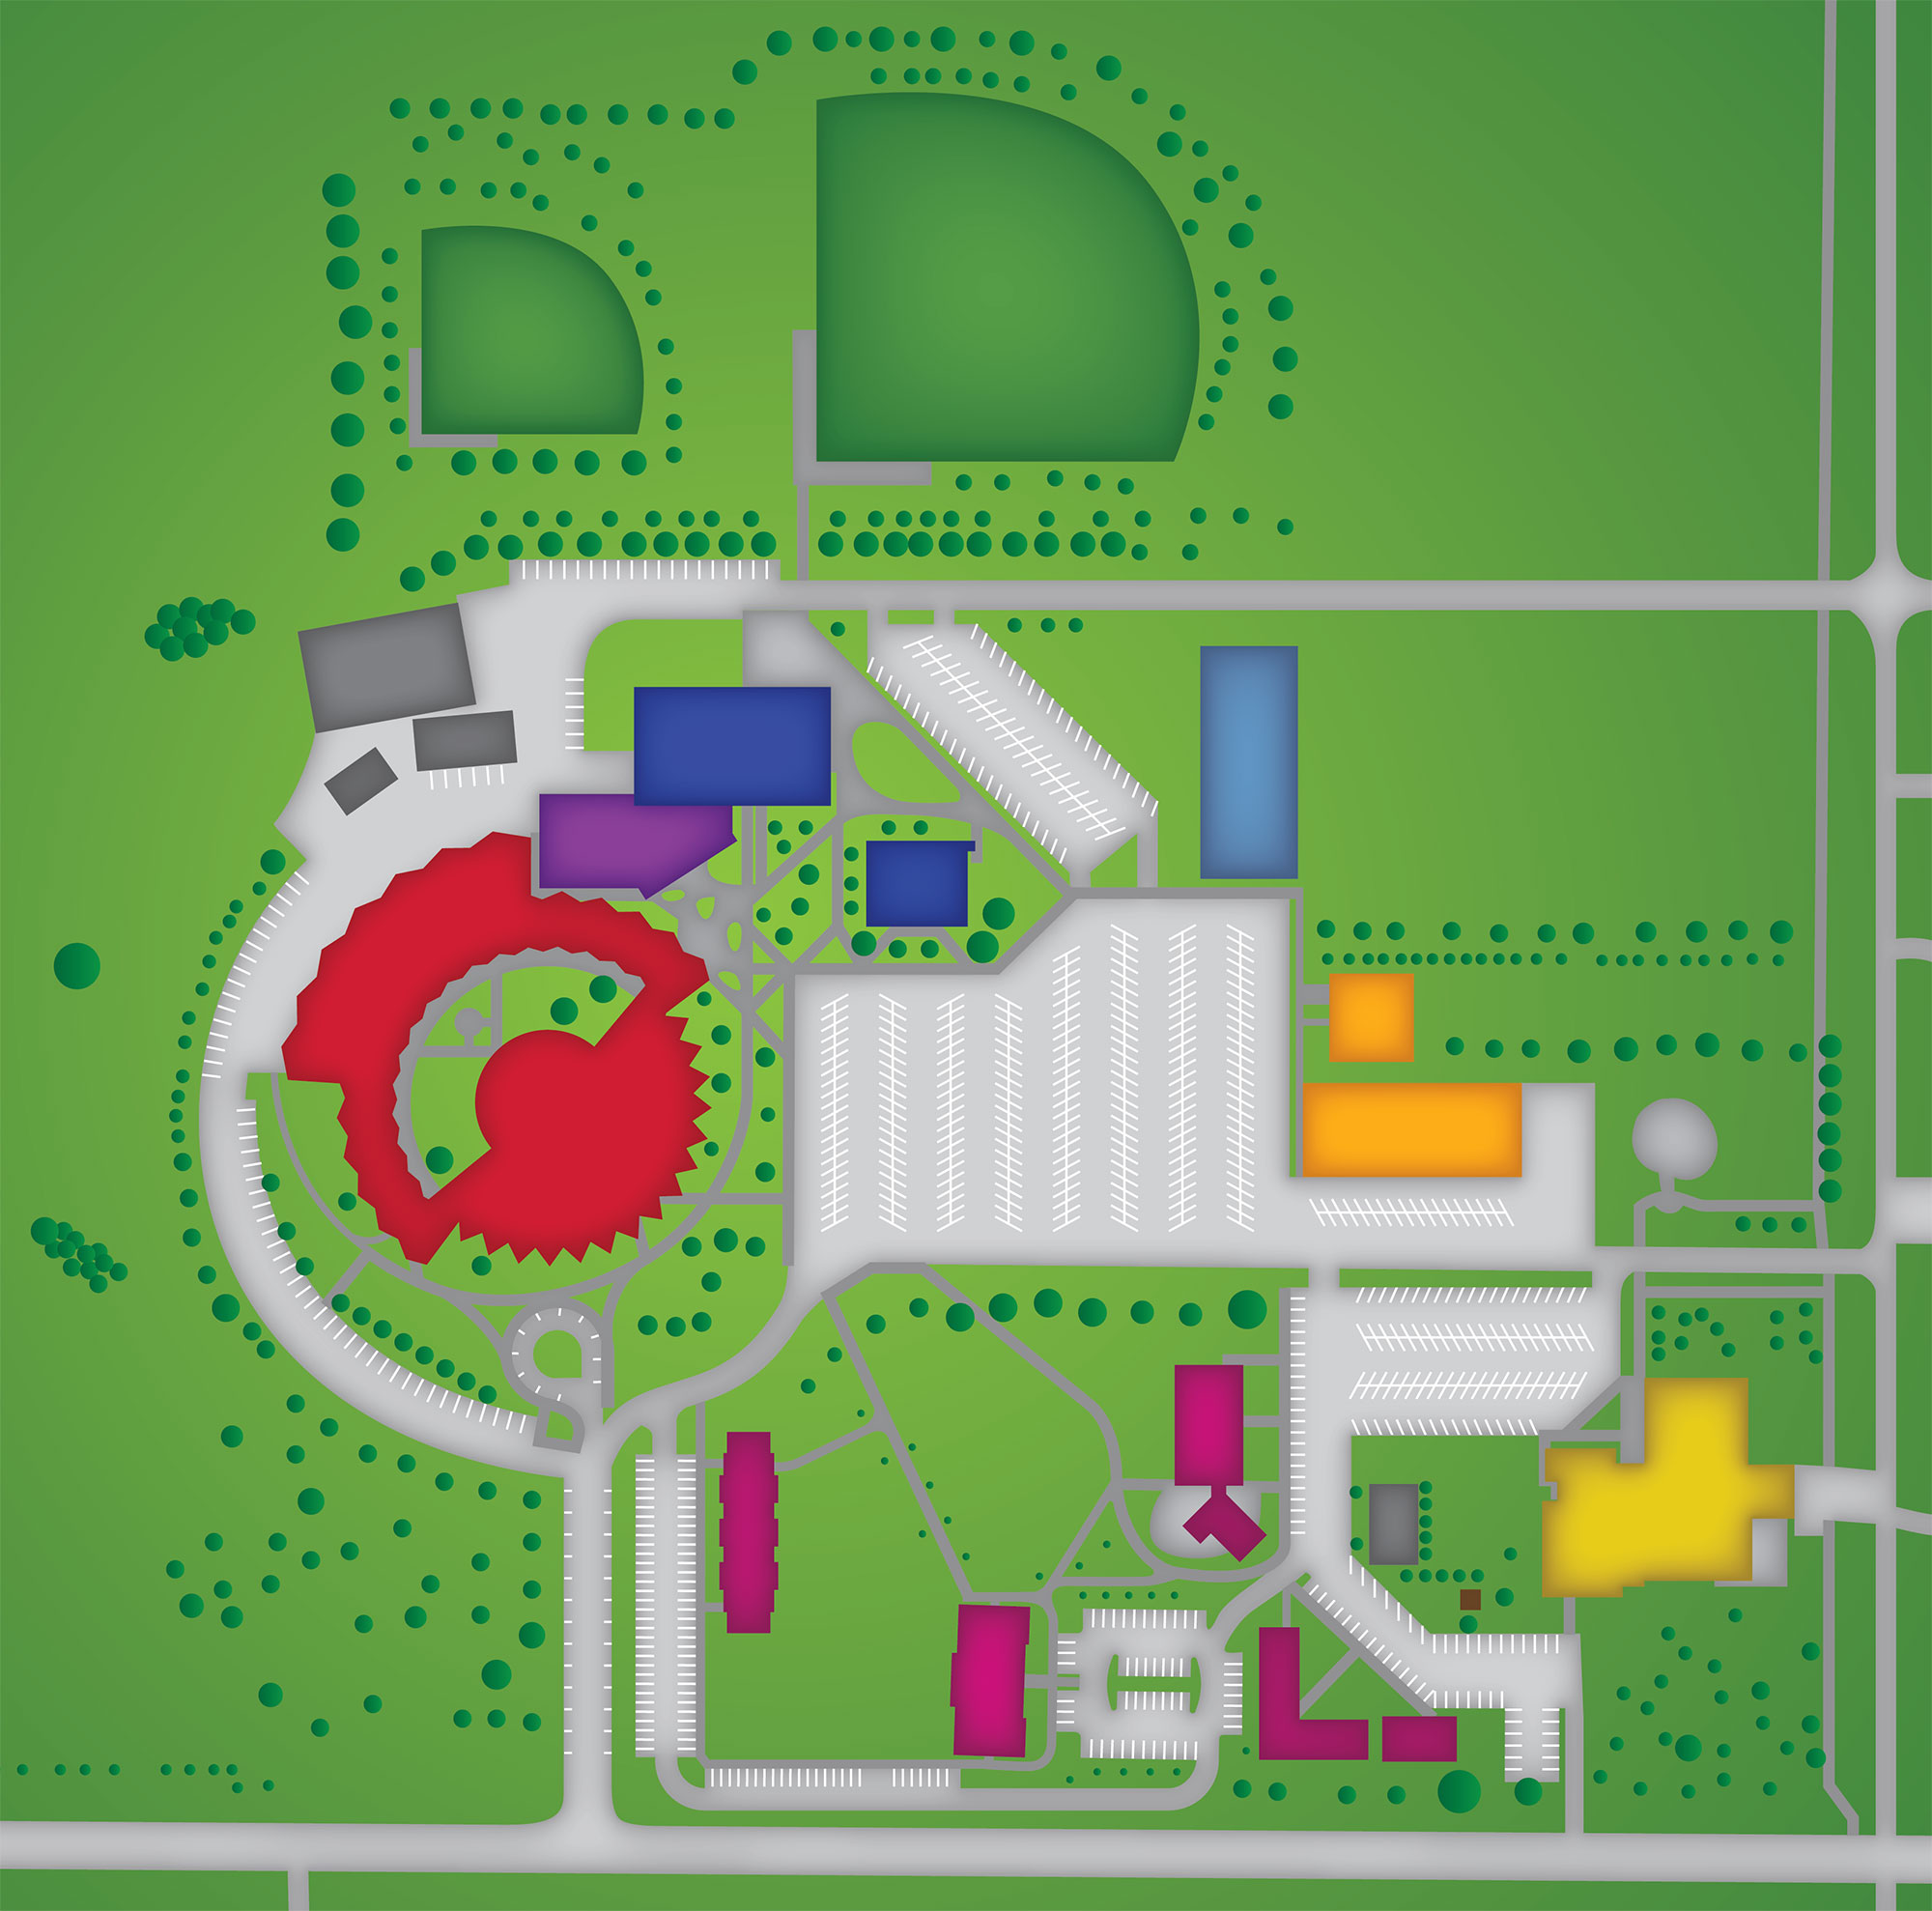 Southwestern College Chula Vista Campus Map